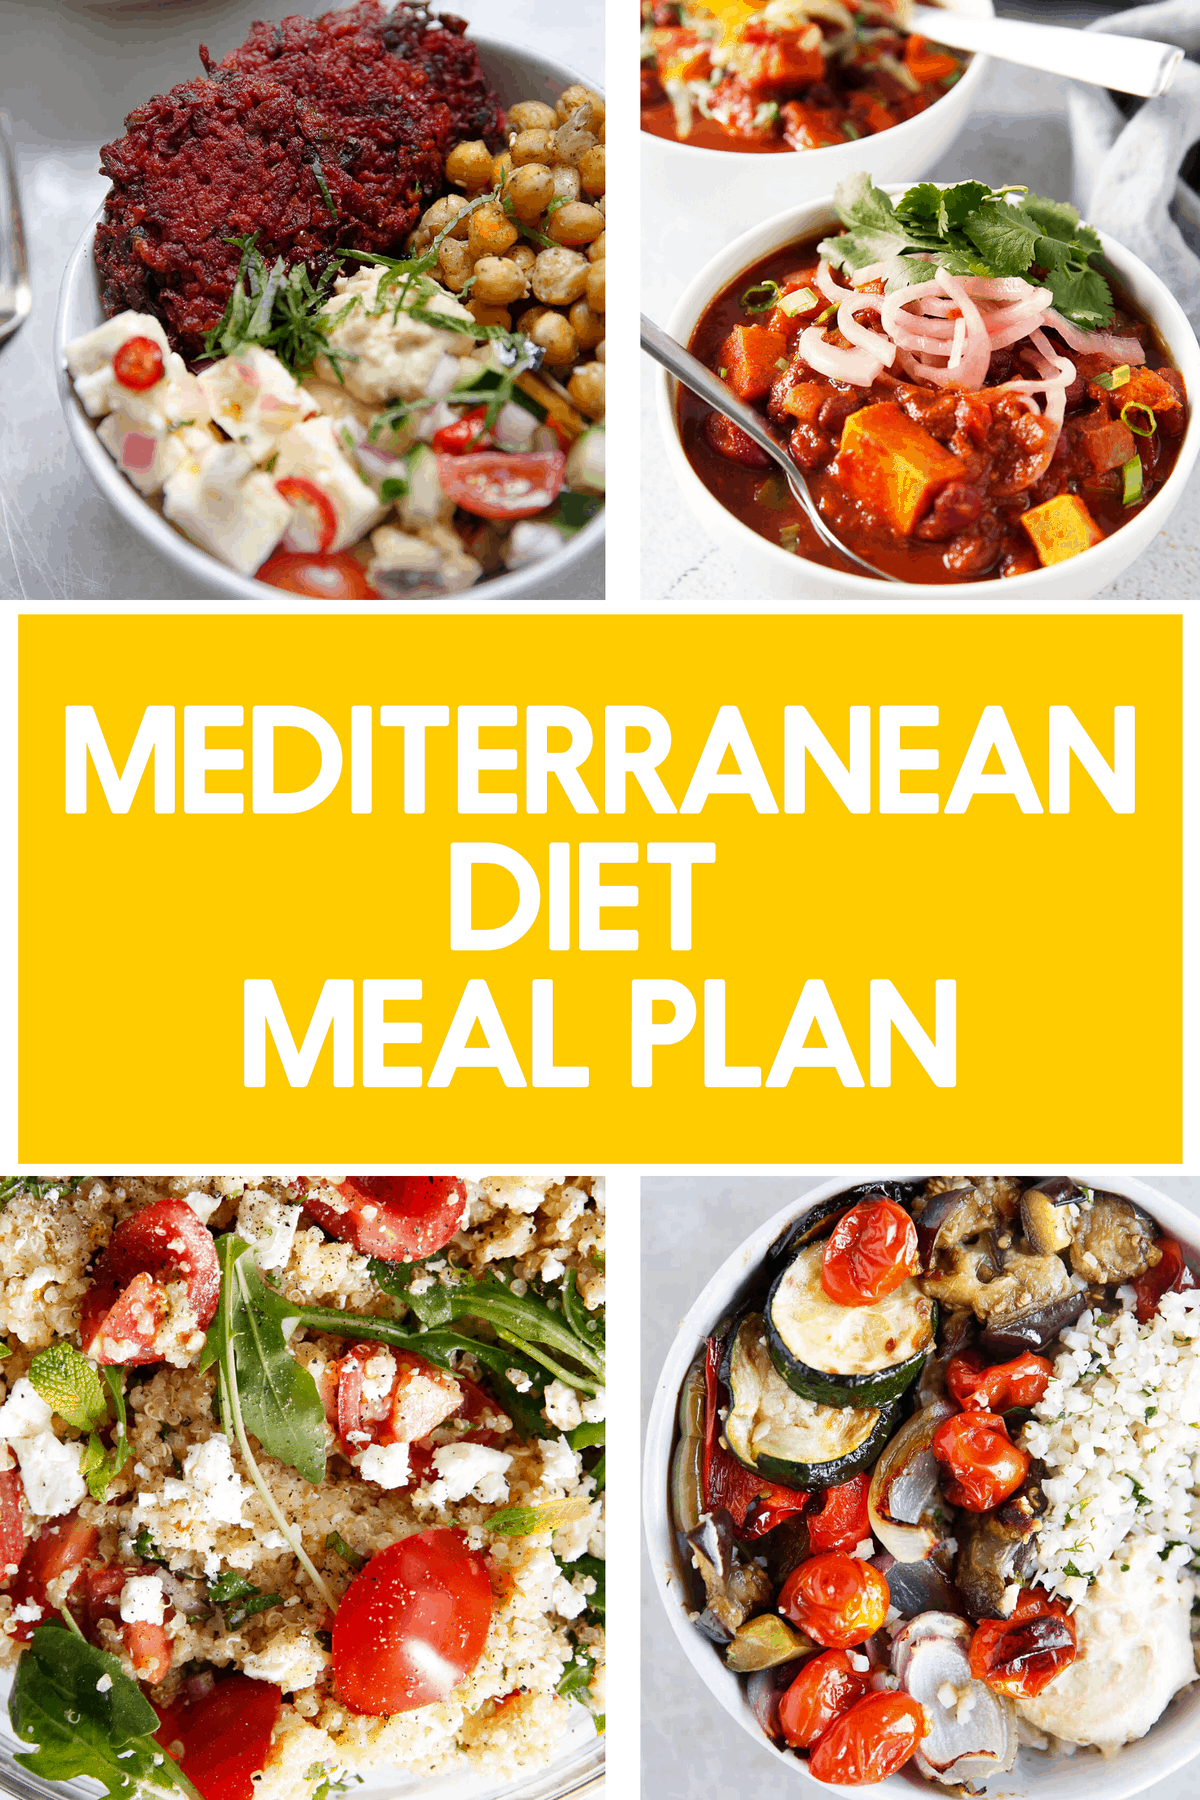 Mediterranean Diet Meal Plan - Lexi's Clean Kitchen